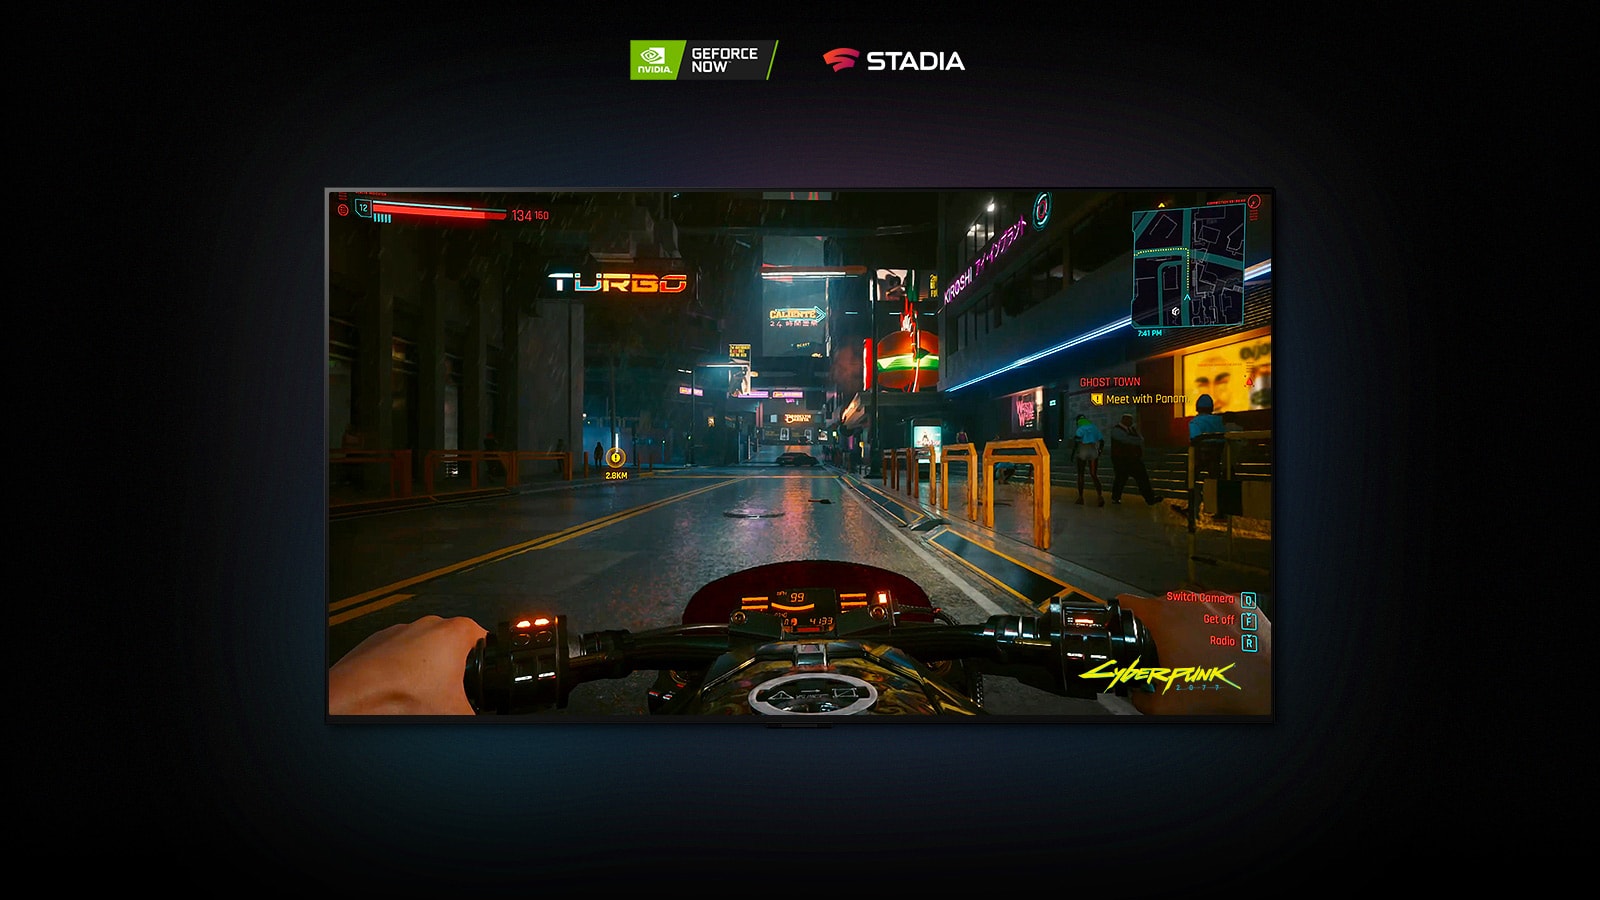 Az LG OLED kijelzőn a Cyberpunk 2077 jelenete látható, melyben a játékos egy neonfényekkel megvilágított utcán halad motorral